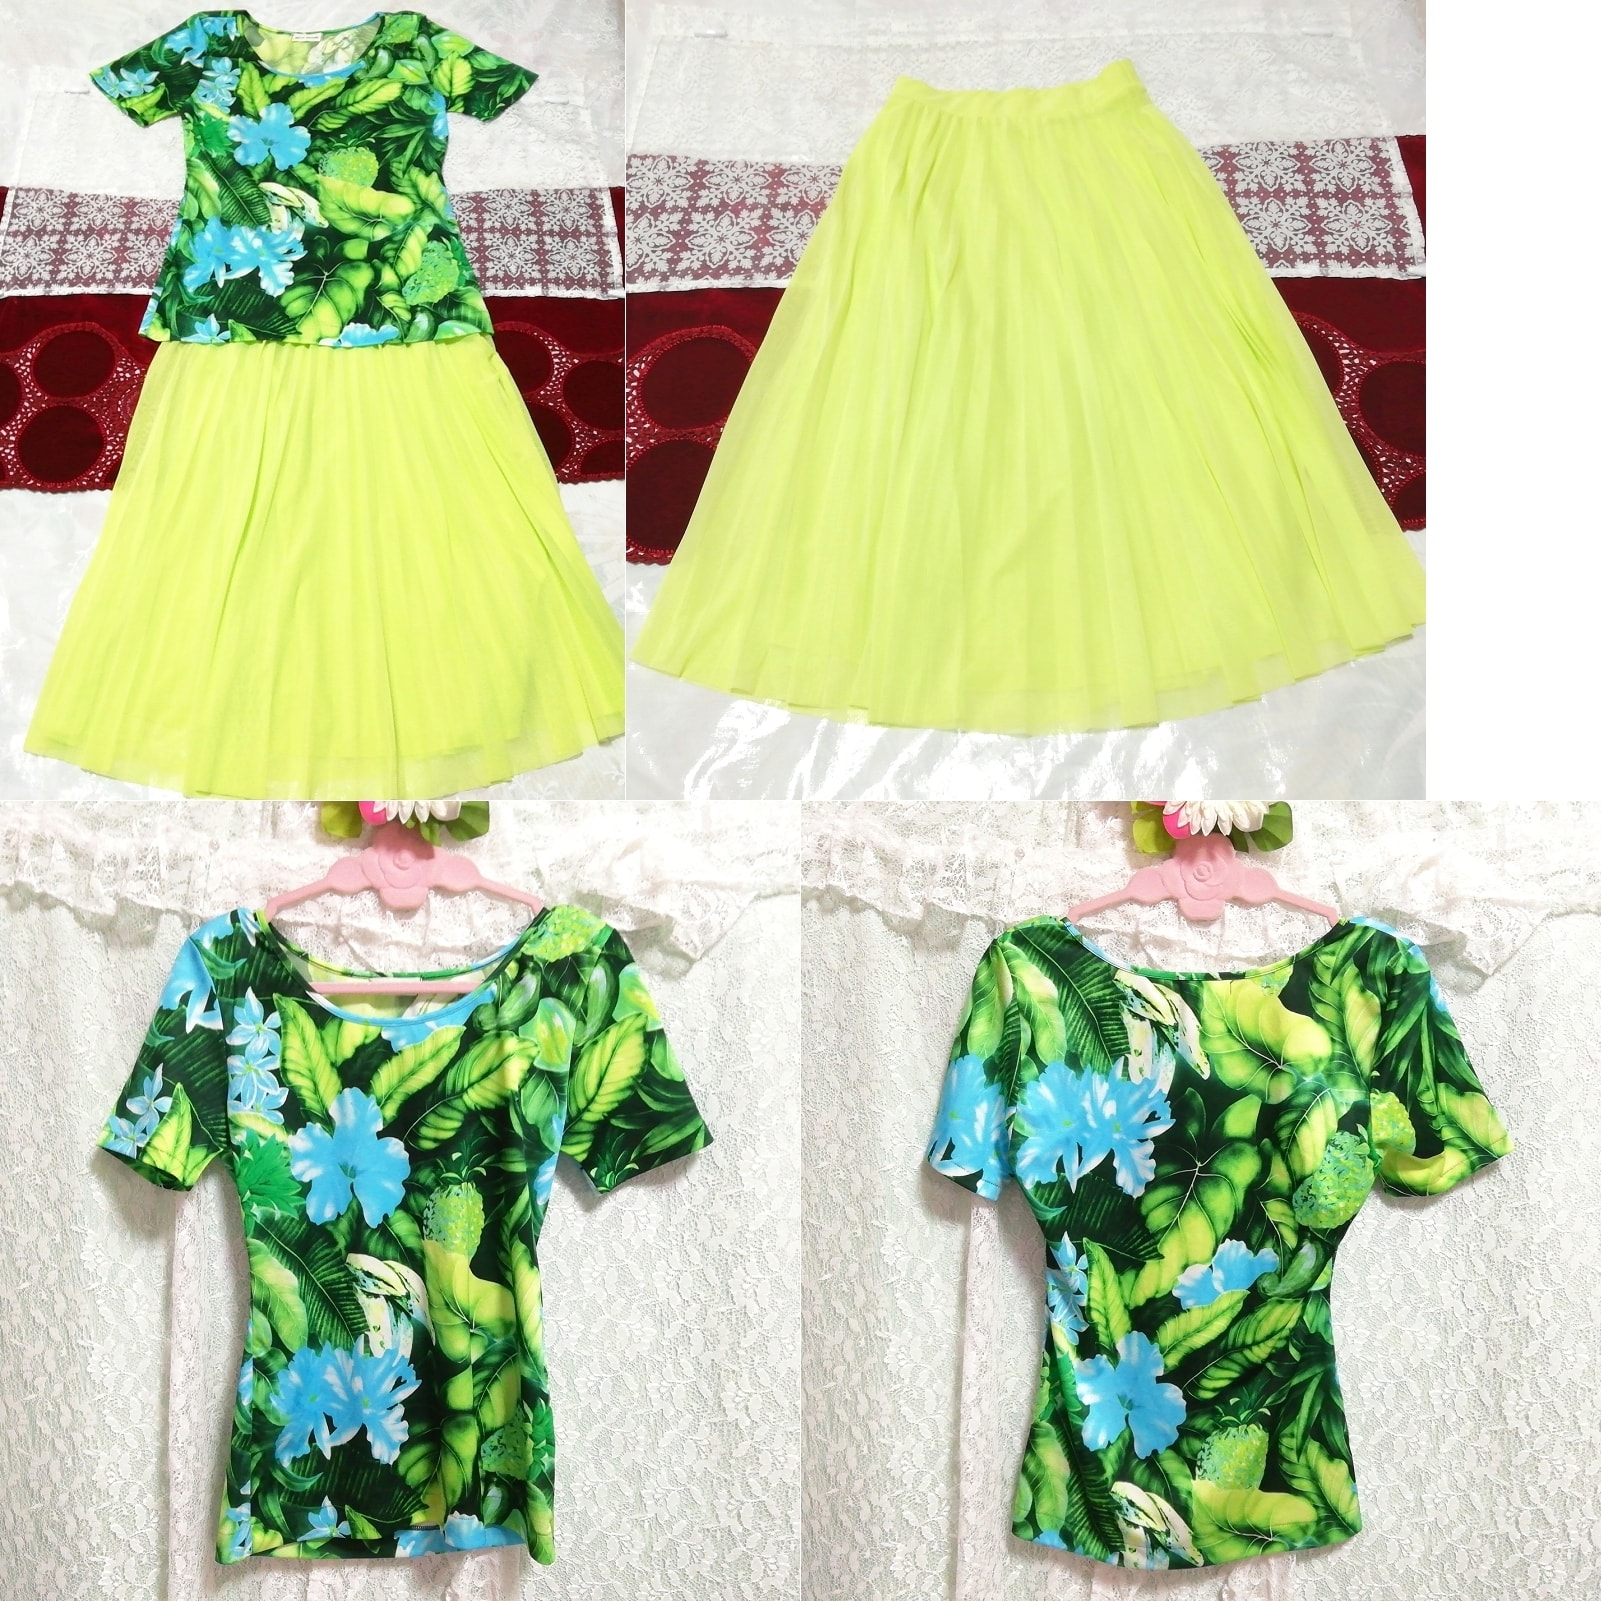 森林图案 T 恤束腰睡衣荧光黄绿色长薄纱裙子 2P, 时尚, 女士时装, 睡衣